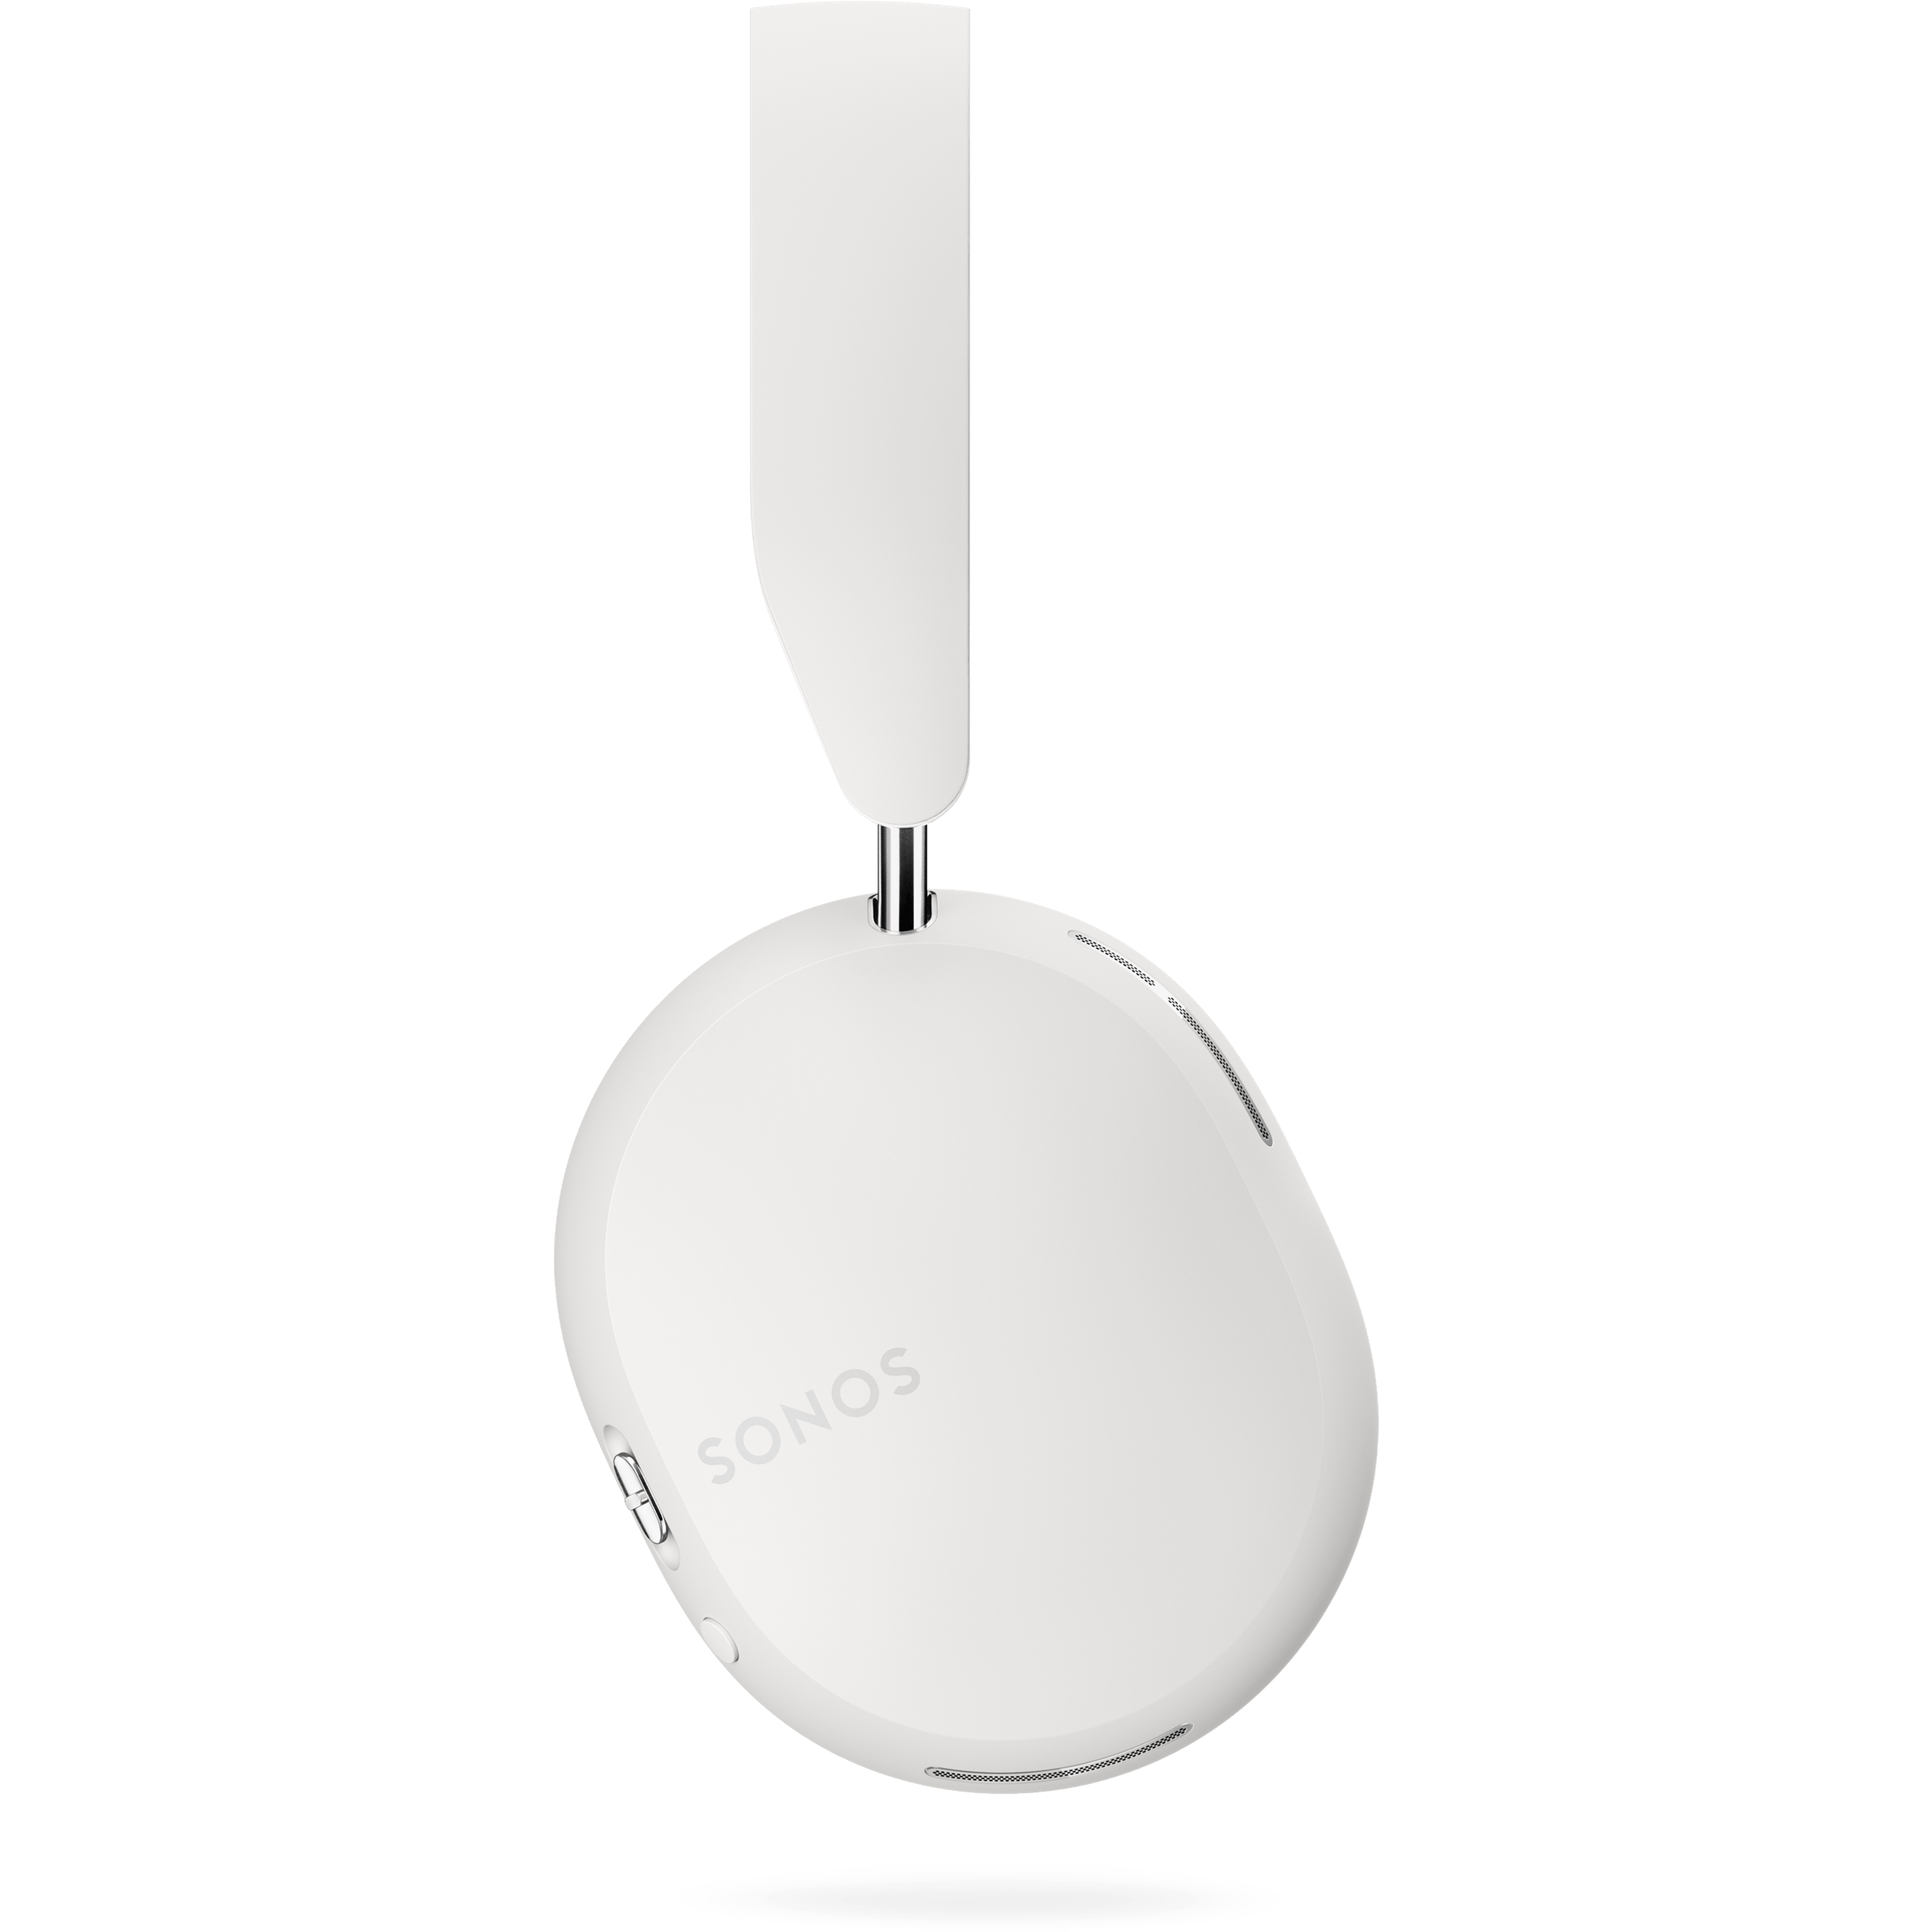 Casque Sonos Ace couleur Soft White, vue de profil droit